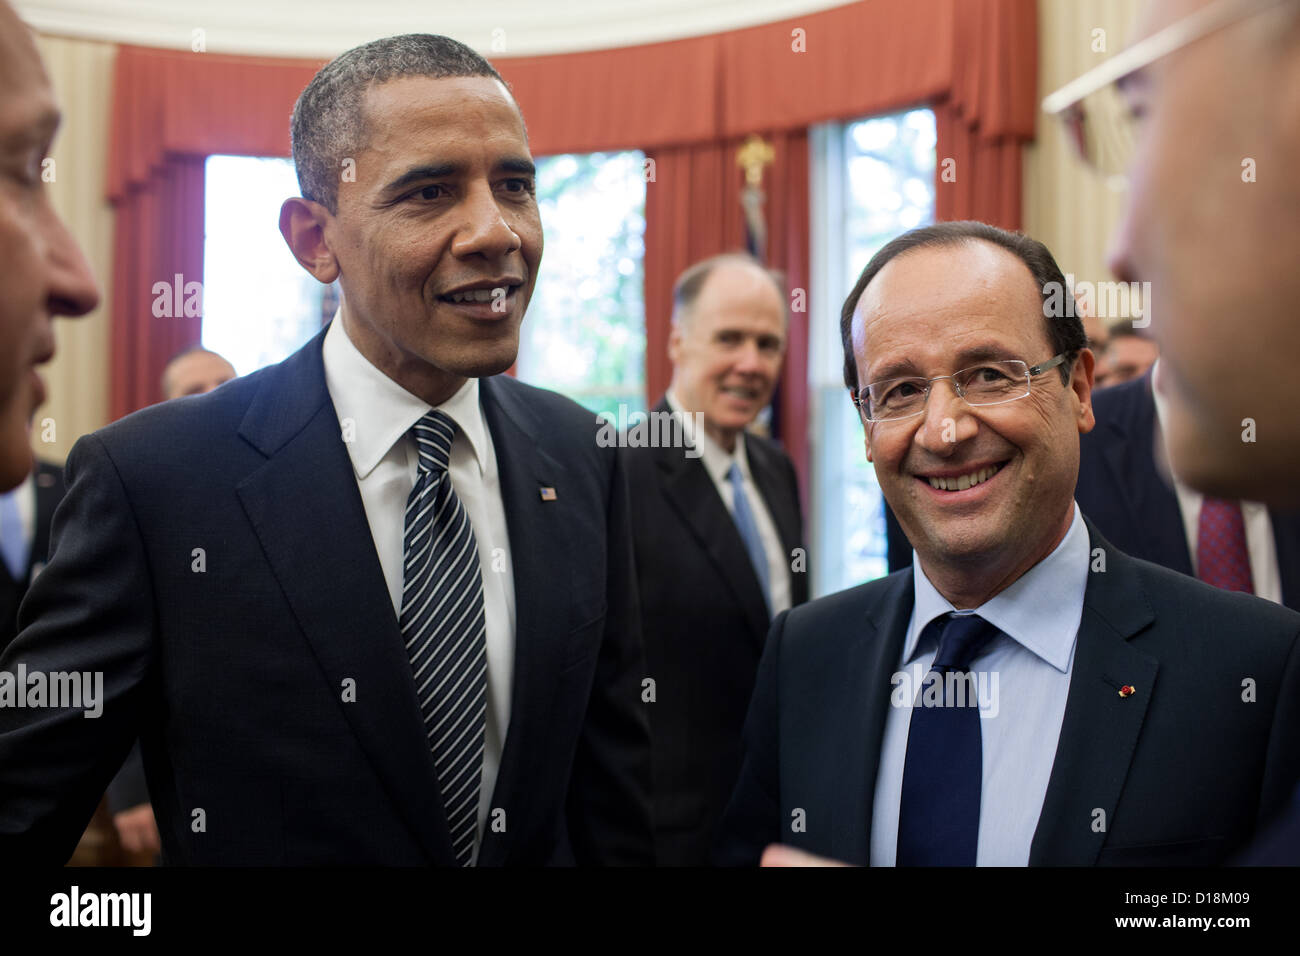 El presidente Barack Obama y el Presidente de Francia François Hollande, con intérpretes, celebrar un debate tras su Foto de stock